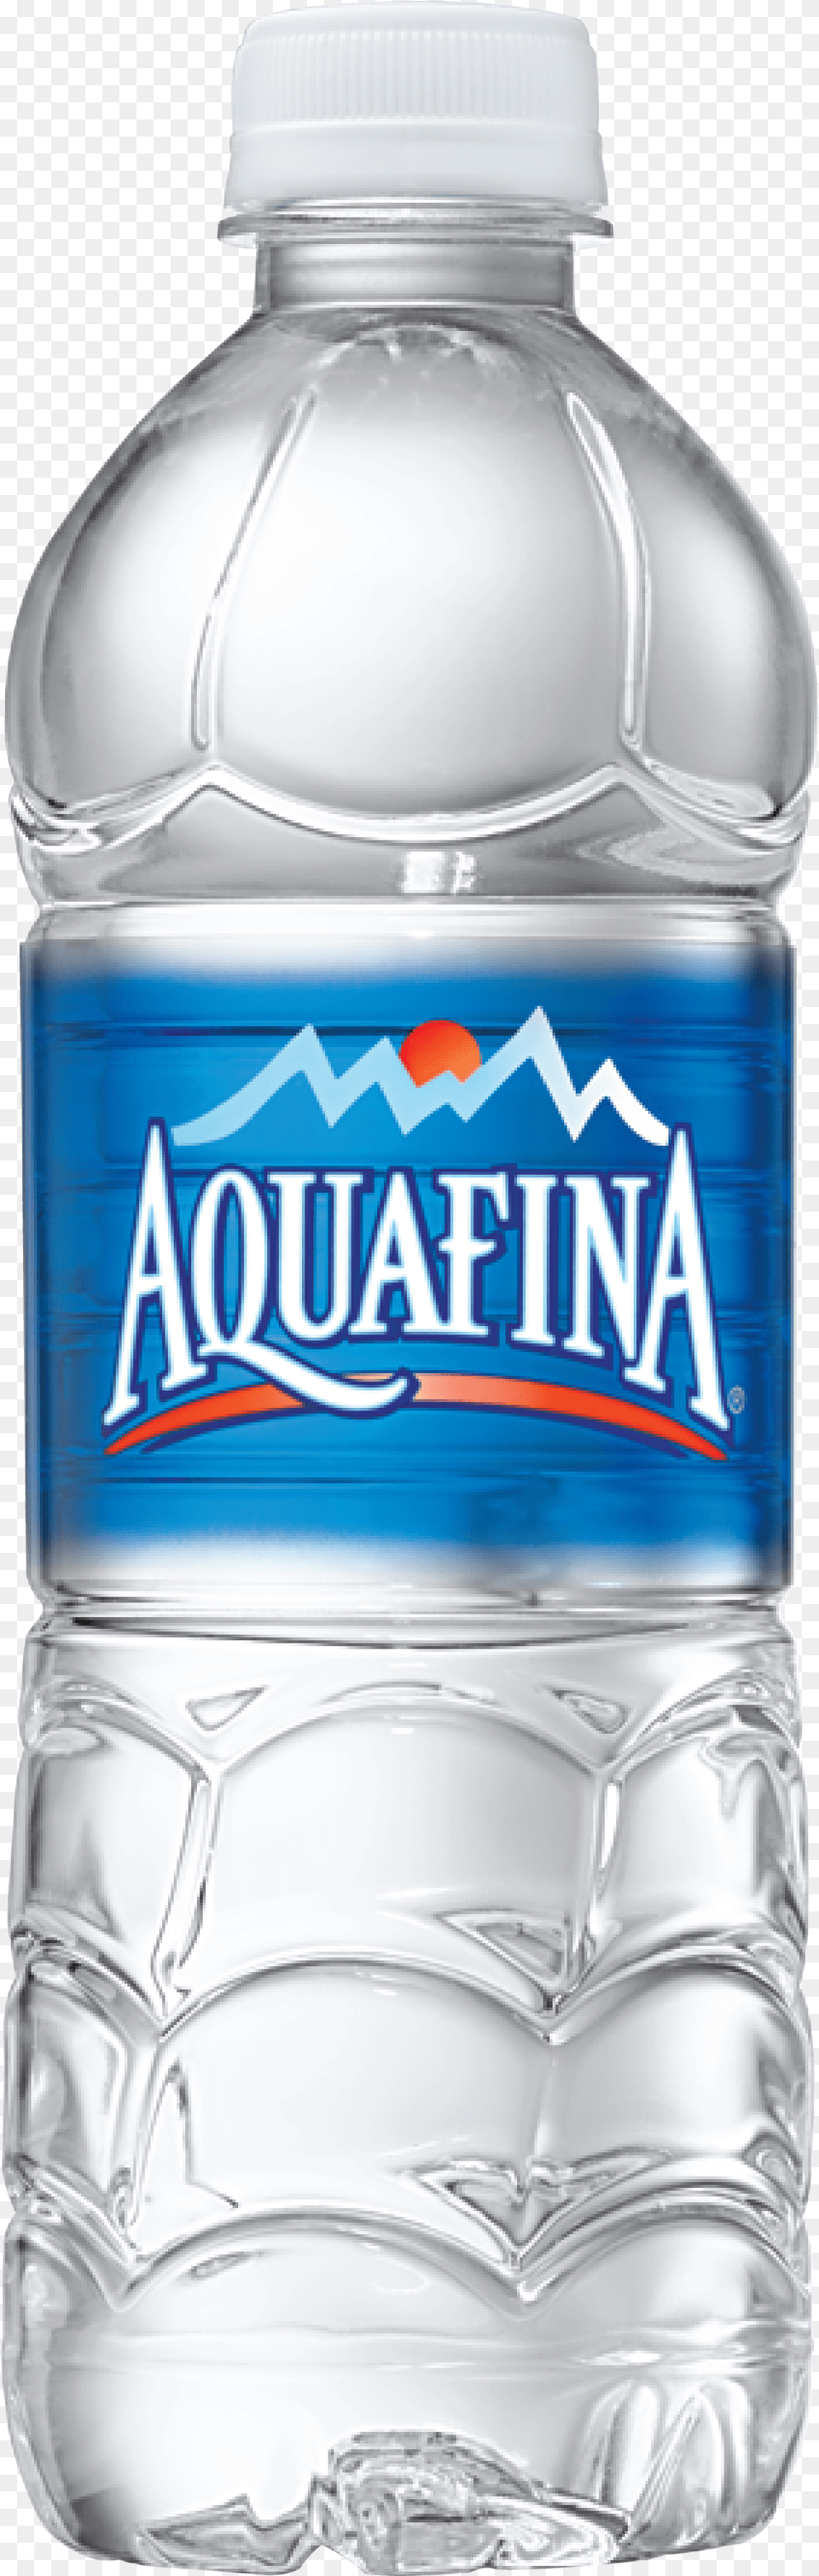 Transparent Aquafina Logo Plastic Aquafina Water Bottle, Beverage, Mineral Water, Water Bottle, Shaker Png